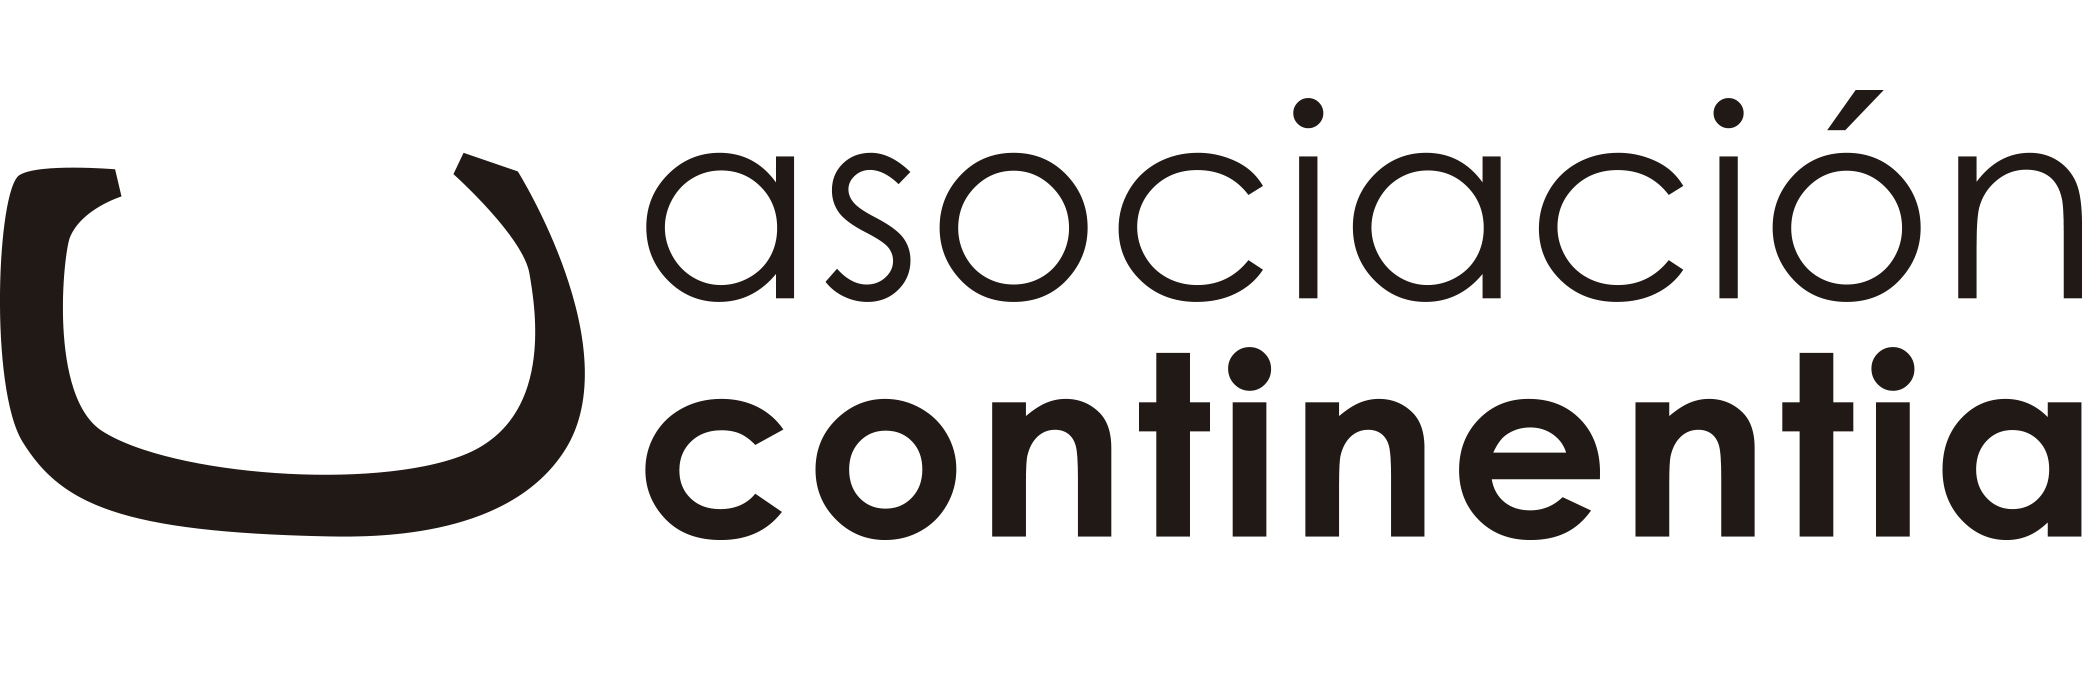 logo asociación continentia web